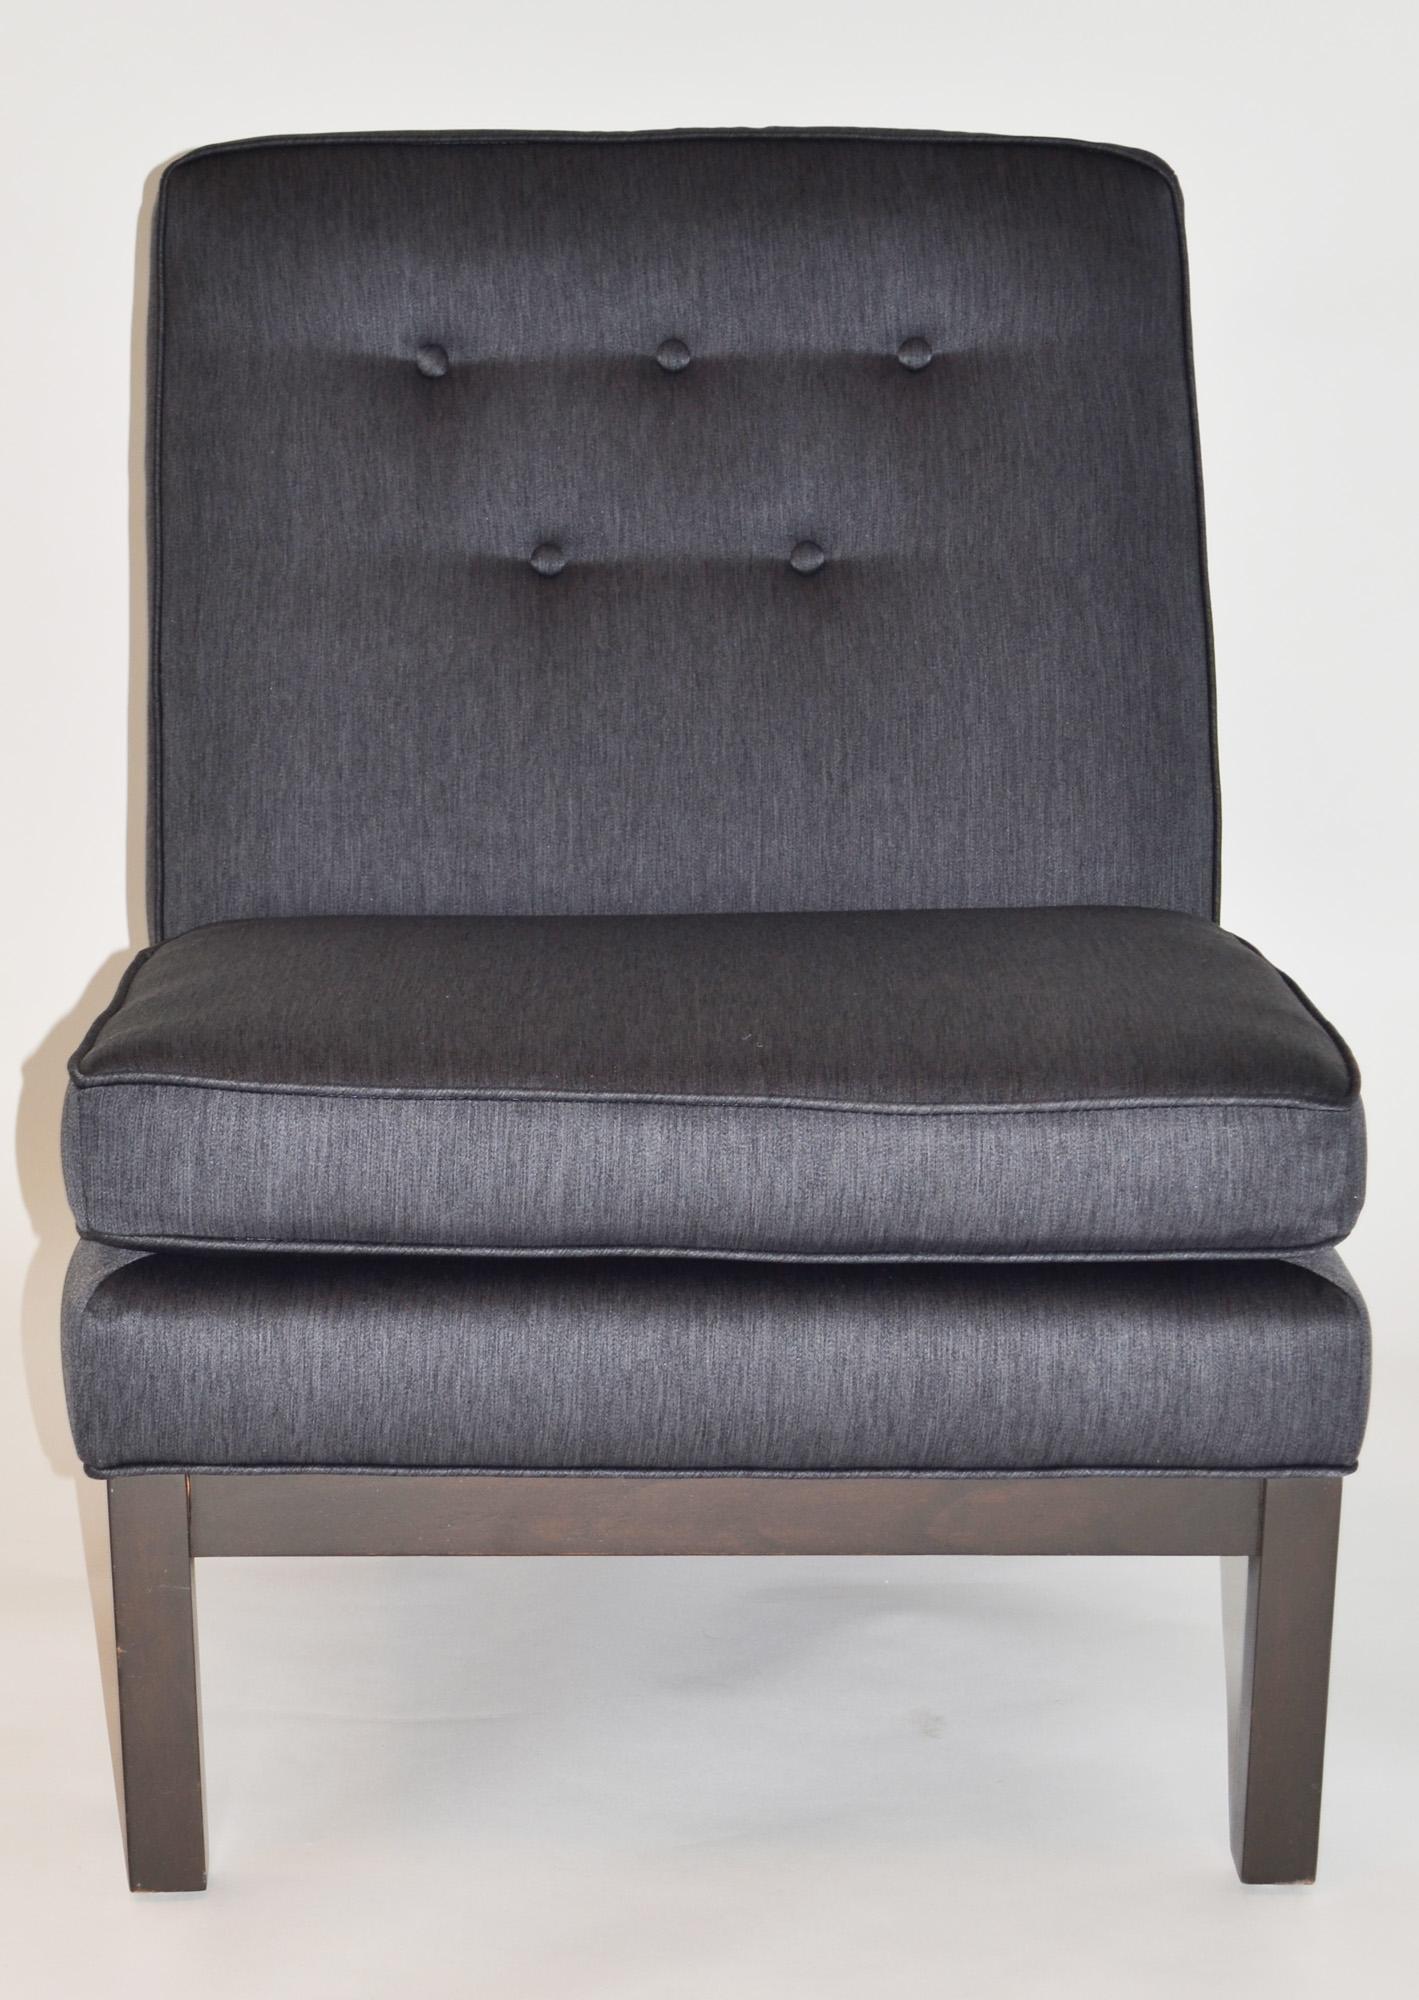 Ein Paar Slipper Lounge Chairs von Kipp Stewart für Directional 1960s 
Neu gepolstert in schiefergrau / dunkel indigo Baumwollstoff mit fünf-Knopf zurück und befestigt Kissen, mit einem professionell restauriert dunklen Finish Walnuss Basis. Etwa